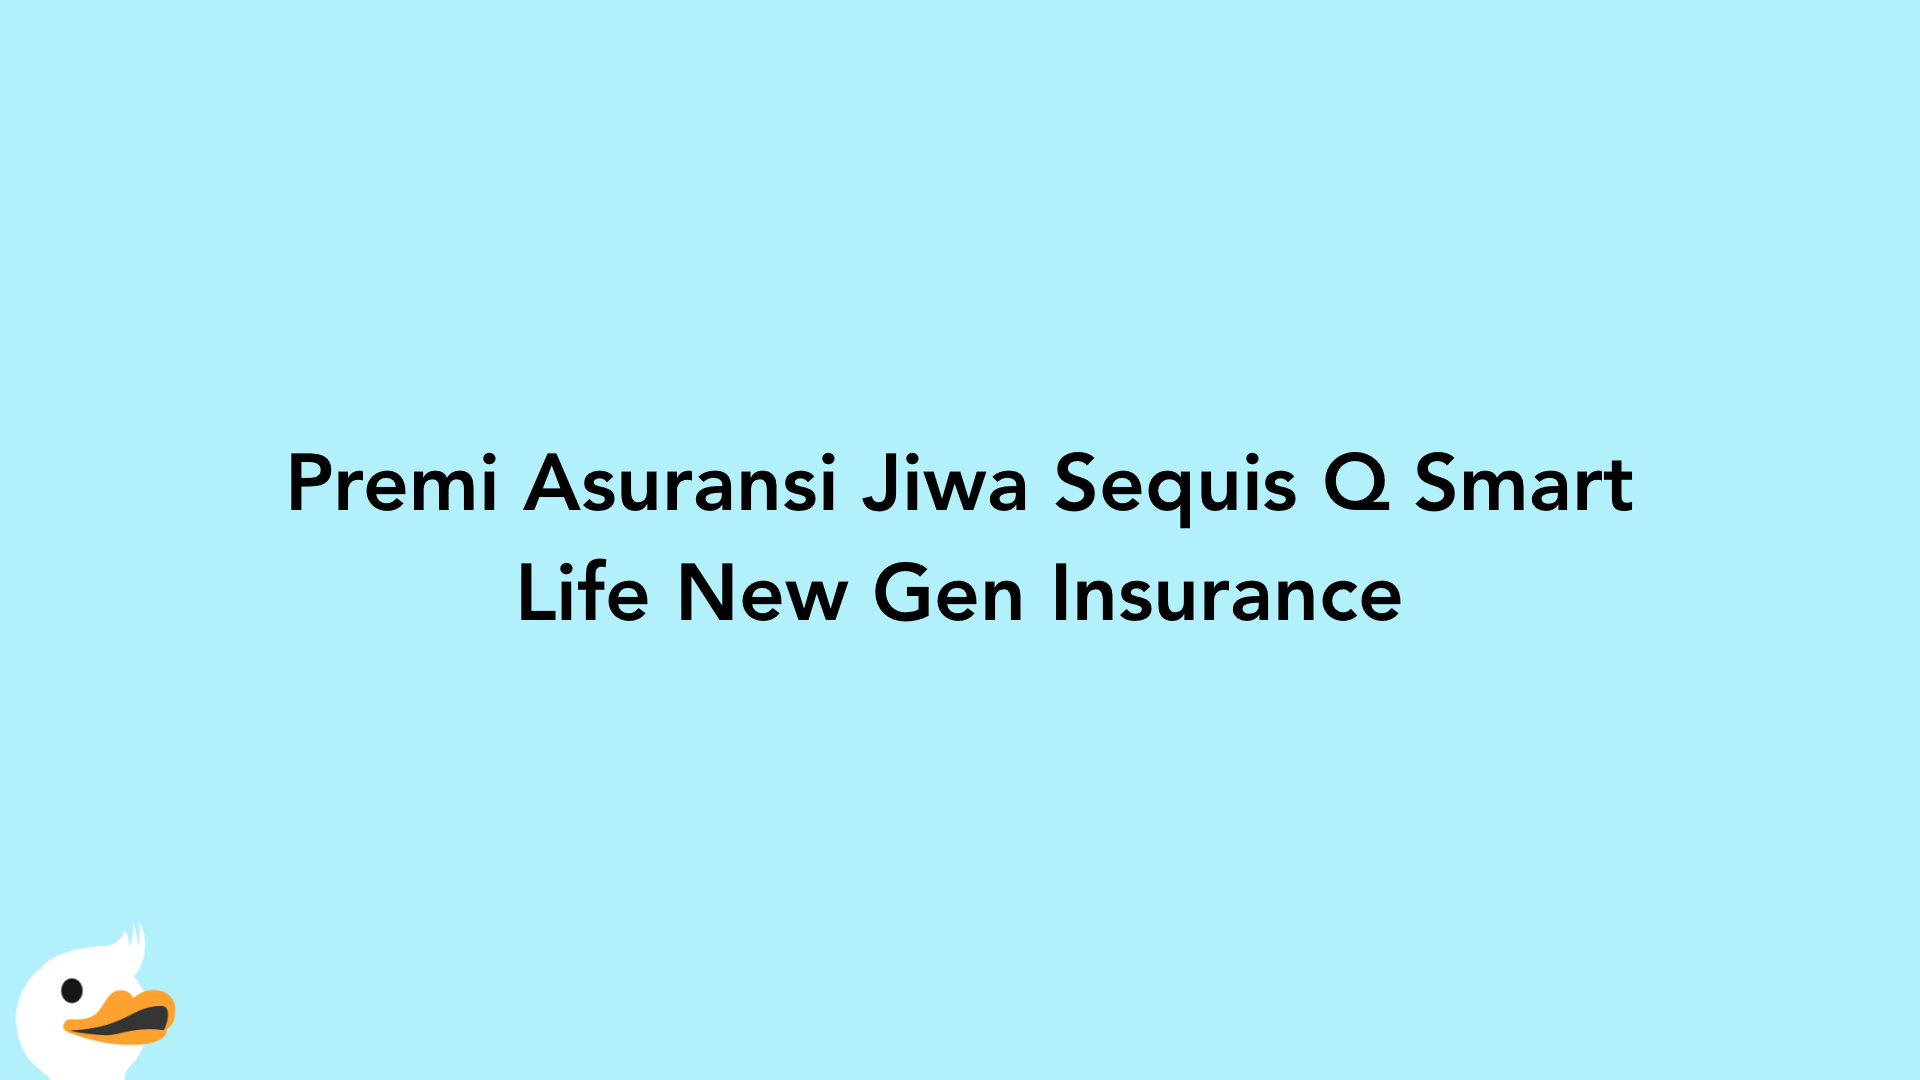 Premi Asuransi Jiwa Sequis Q Smart Life New Gen Insurance